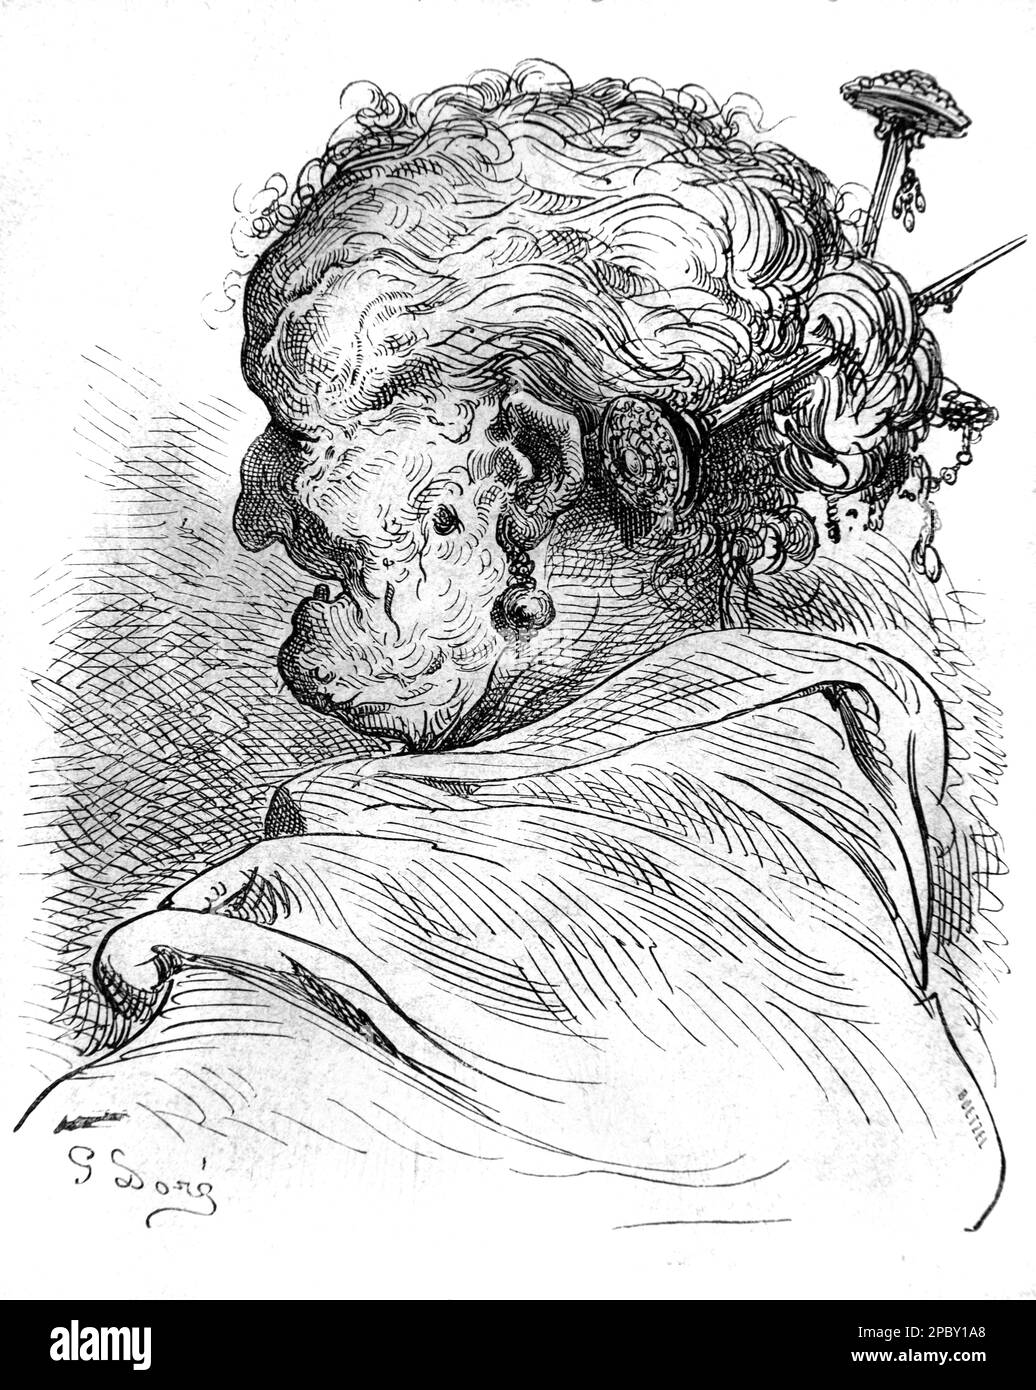 Portrait de la vieille femme espagnole de Valence Espagne. Gravure ou illustration vintage ou historique par Gustave doré 1862 Banque D'Images